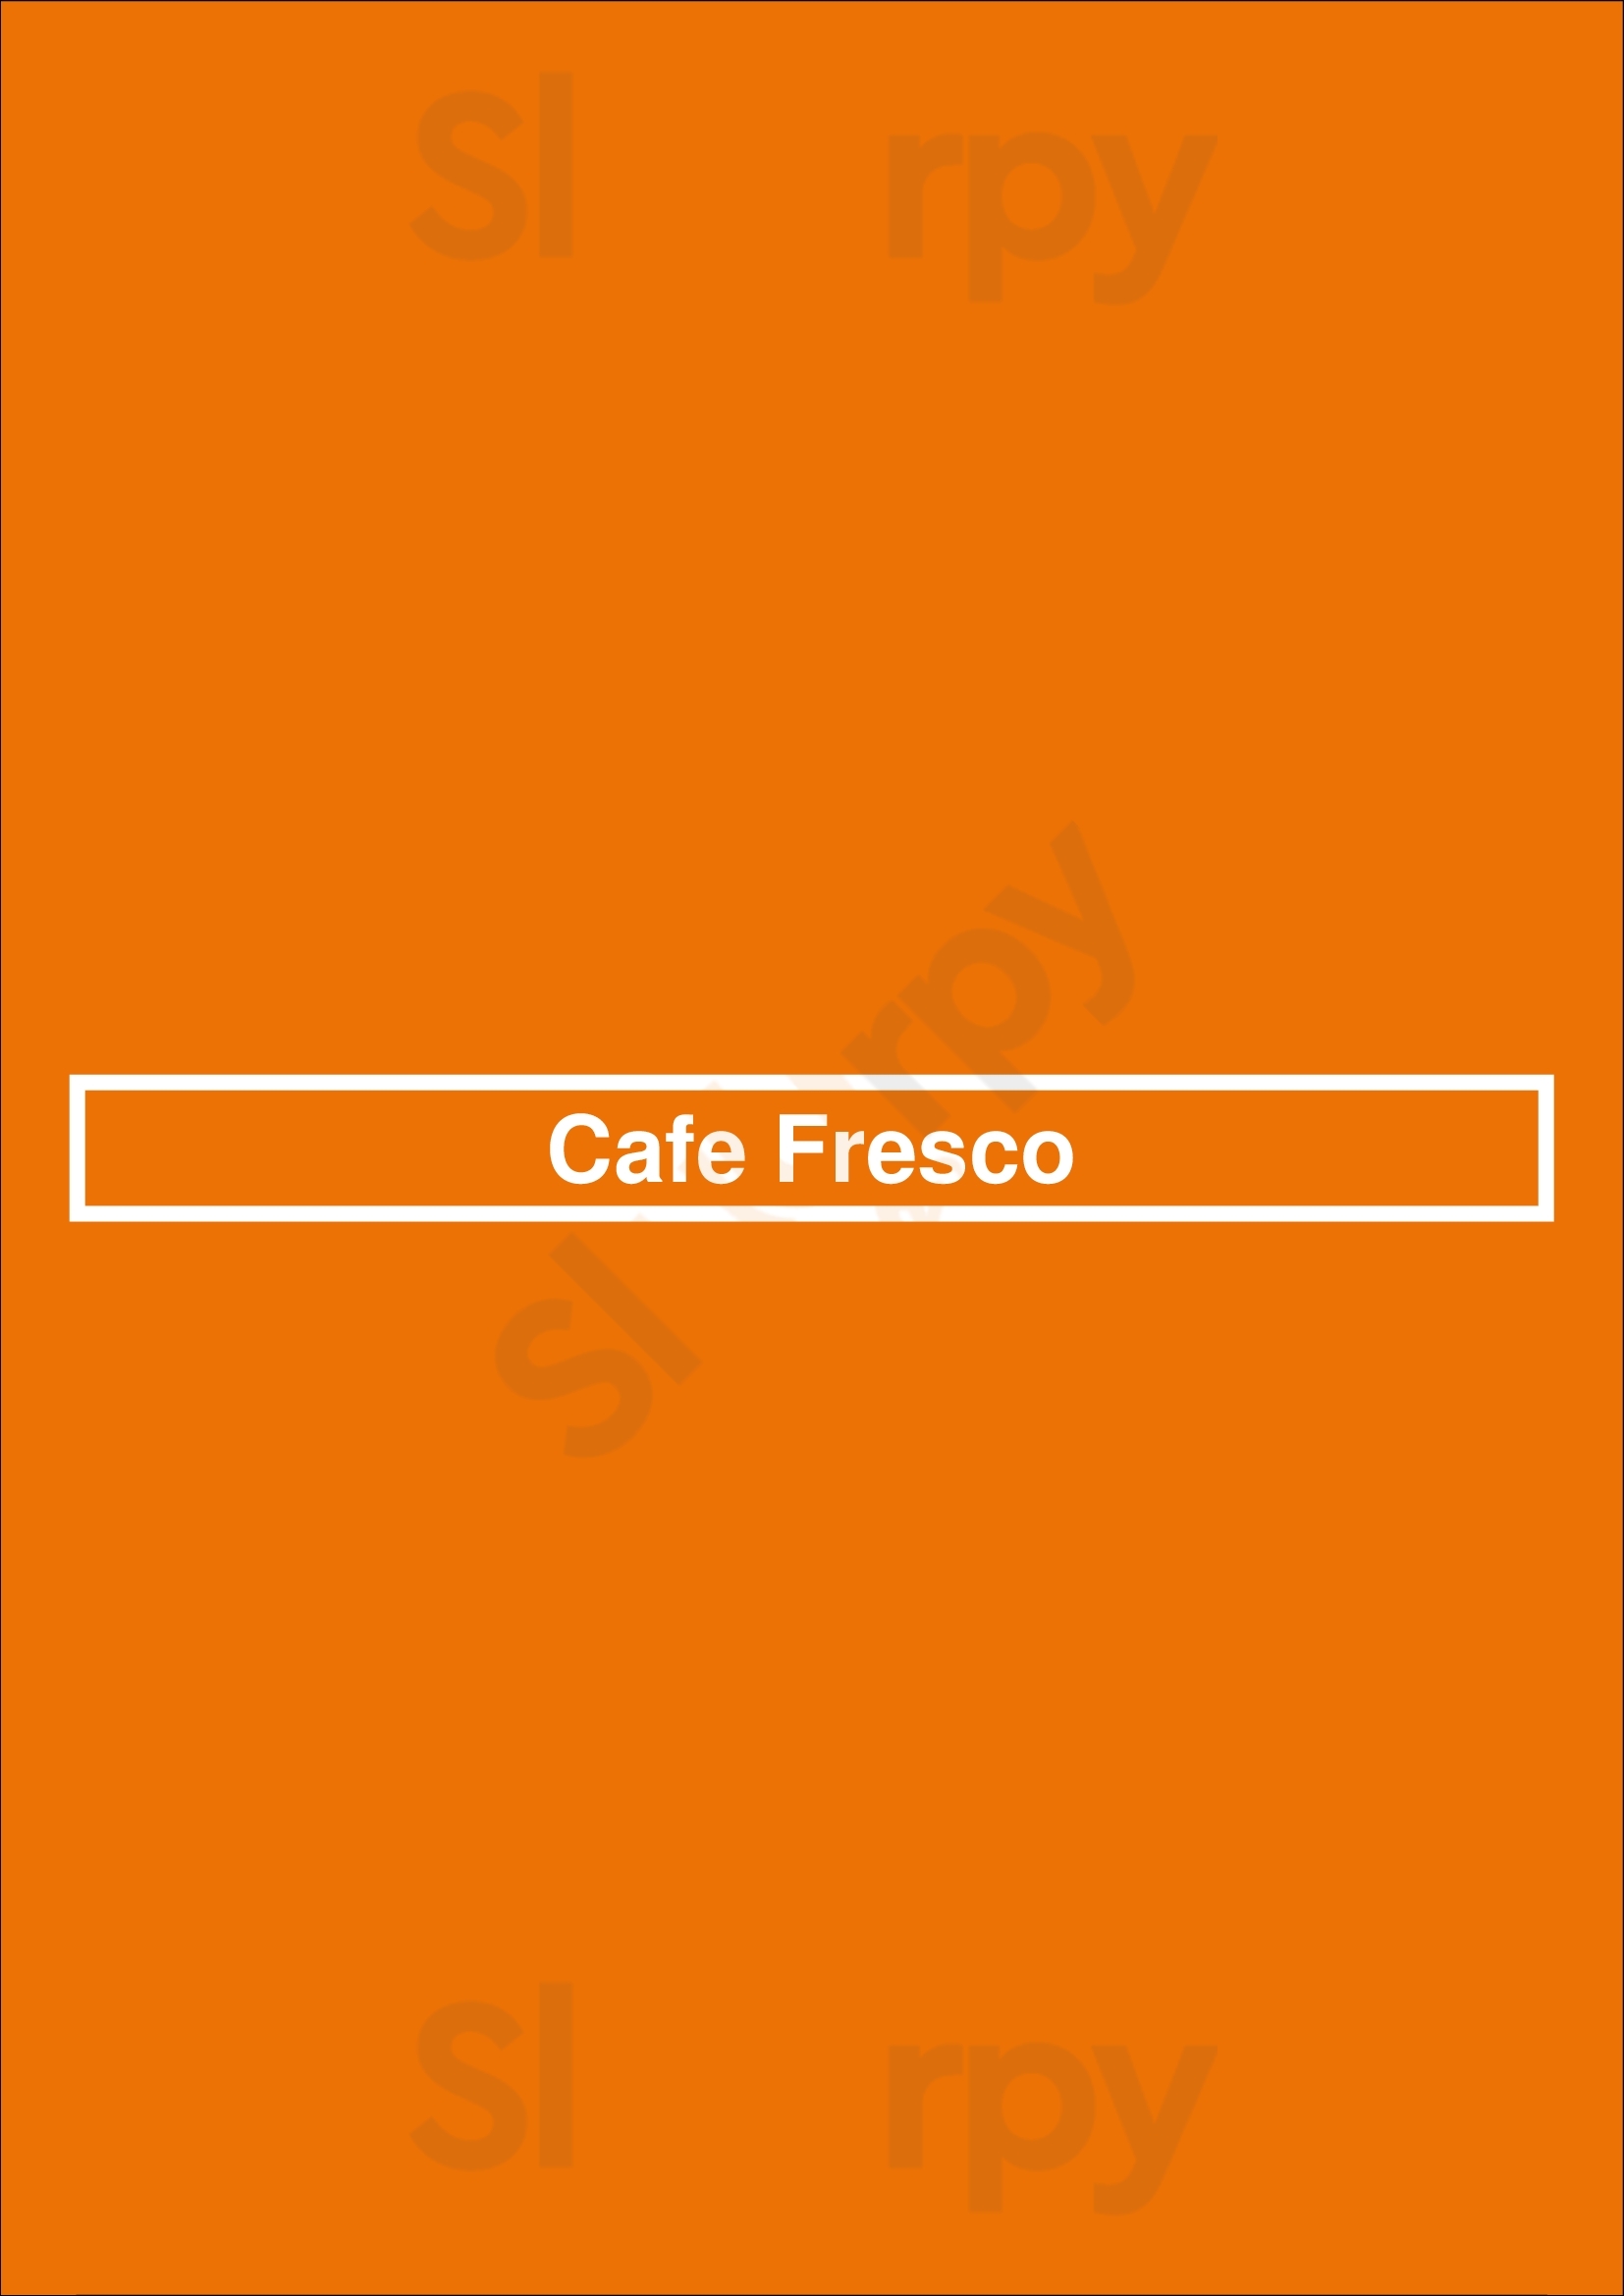 Cafe Fresco New York City Menu - 1